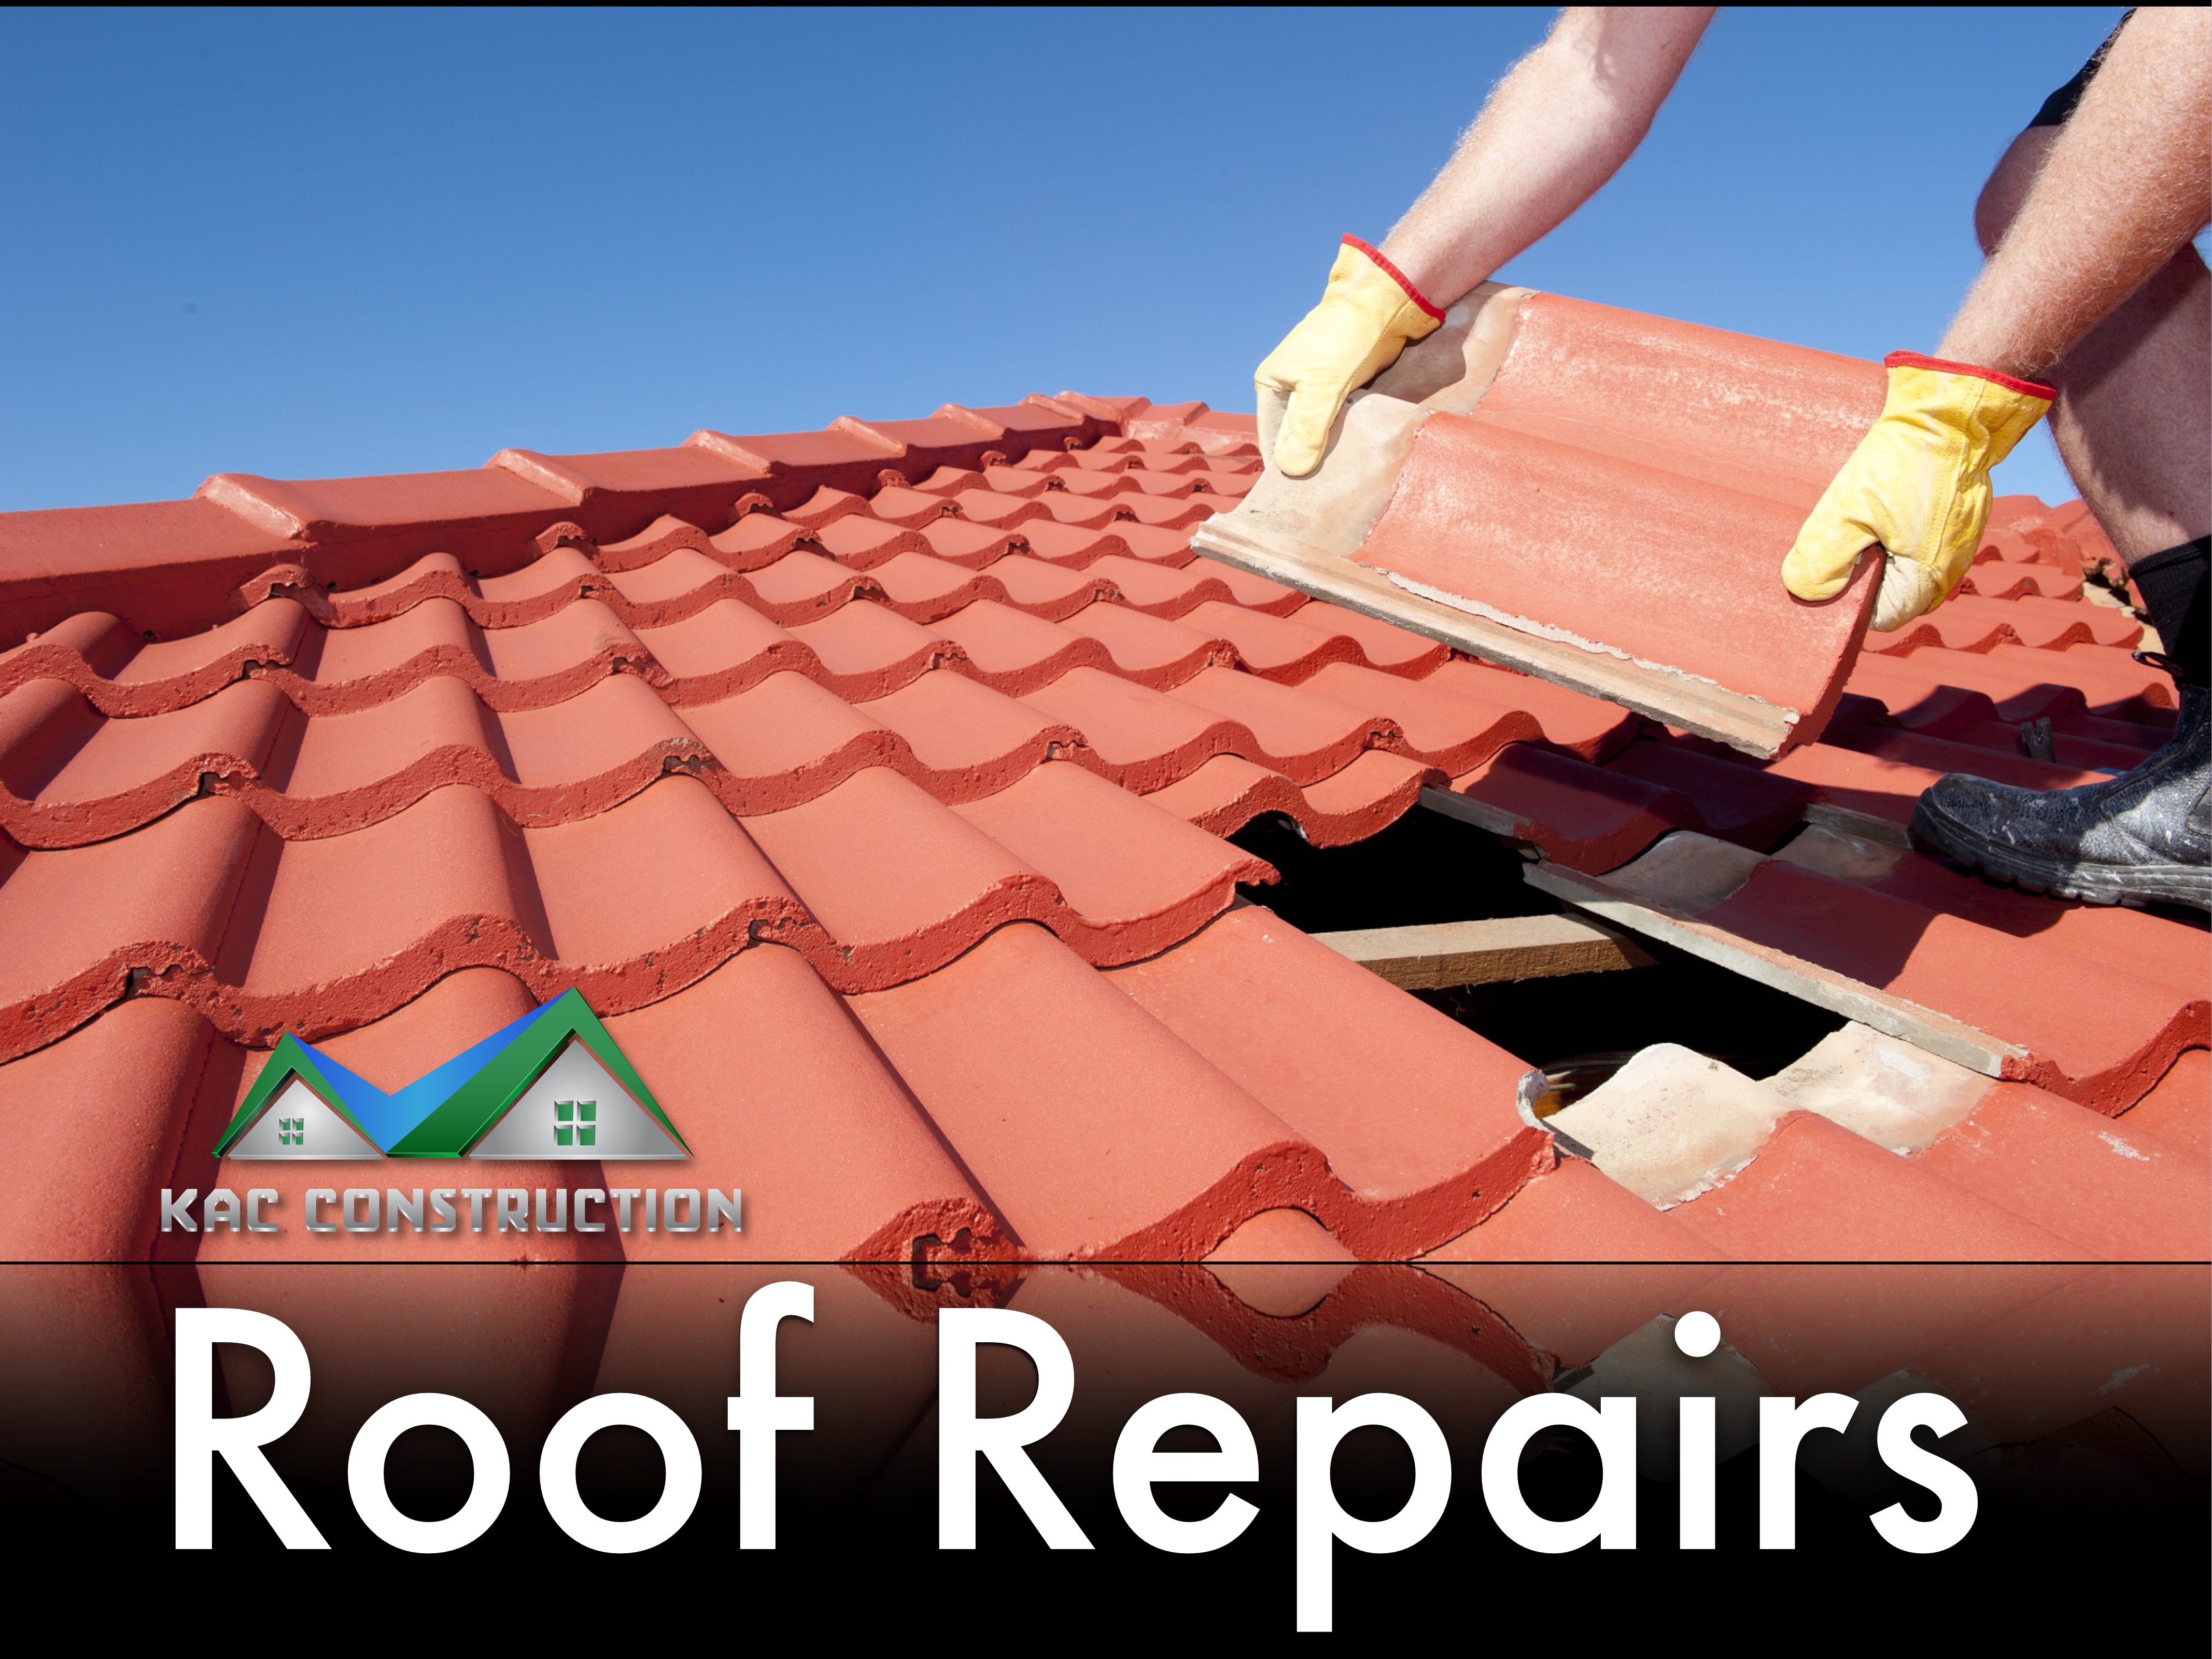 ROOF REPAIRS, roof repair ct, roof repair new london, roof repairs ct, roof repairs new london, roof repair in ct, roof repair in new london, roof repairs in ct, roof repairs in new london